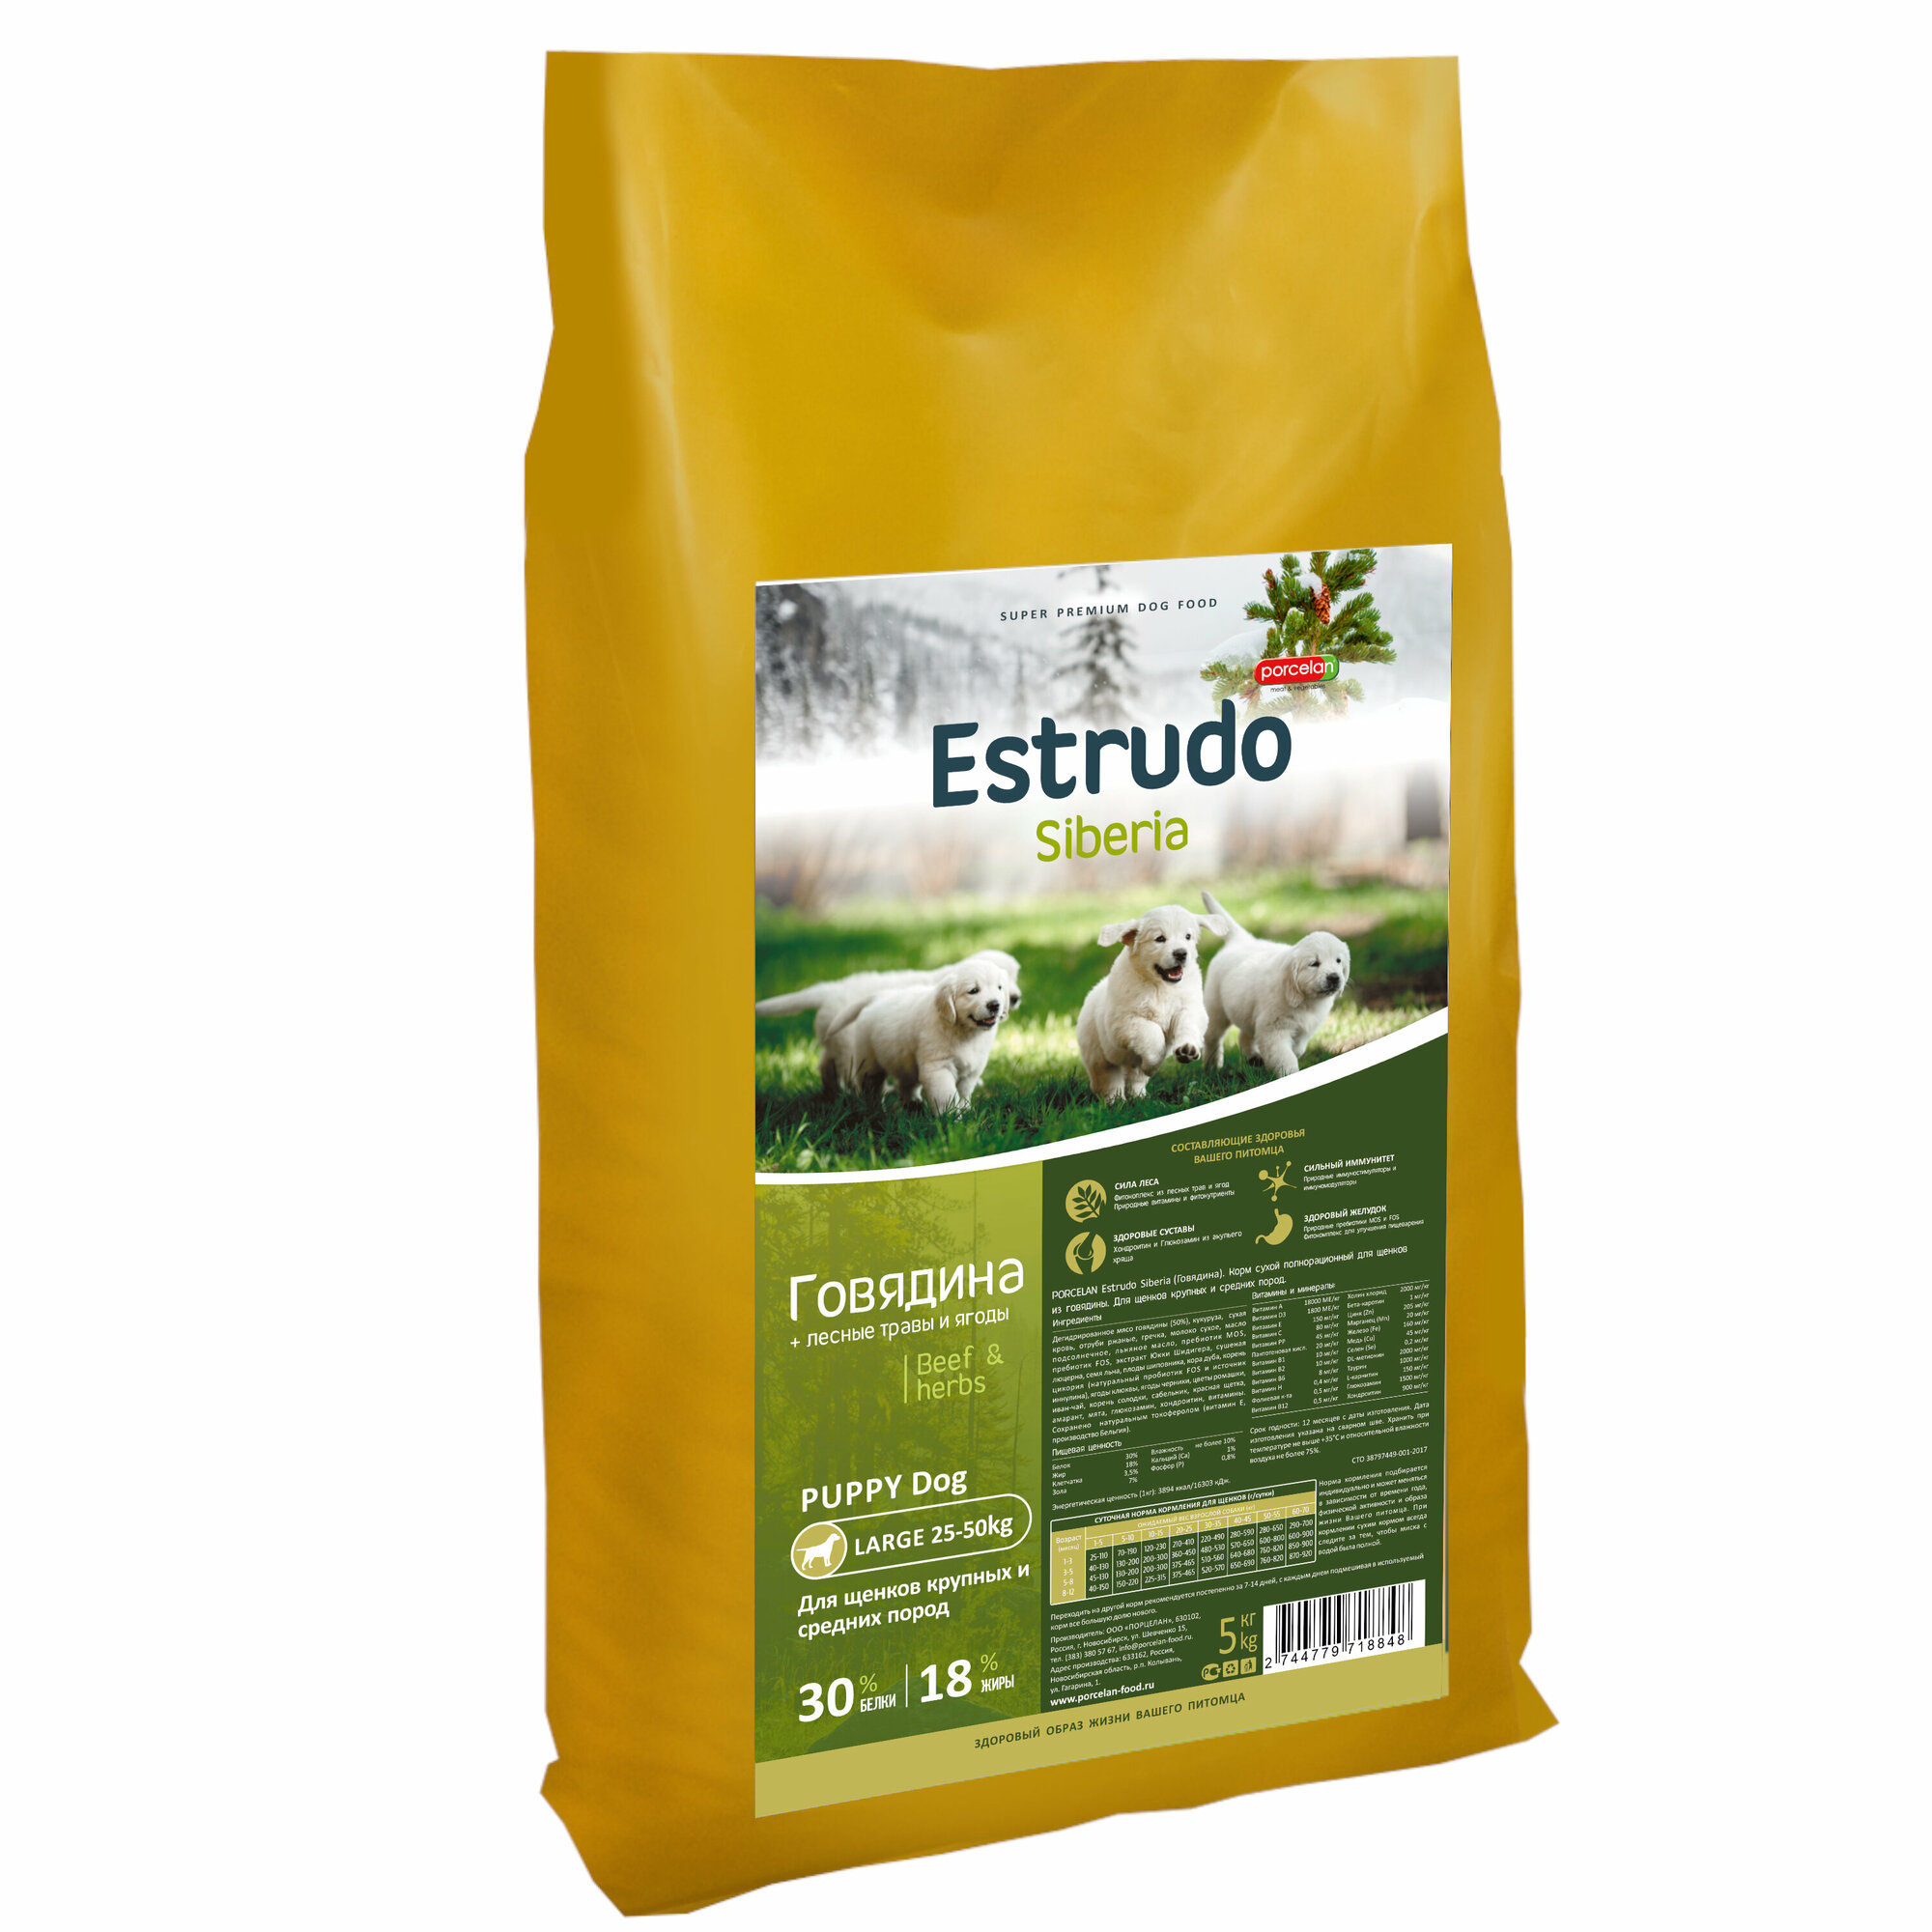 Сухой корм Estrudo Siberia (Говядина + лесные травы) для щенков крупных и средних пород 5 кг